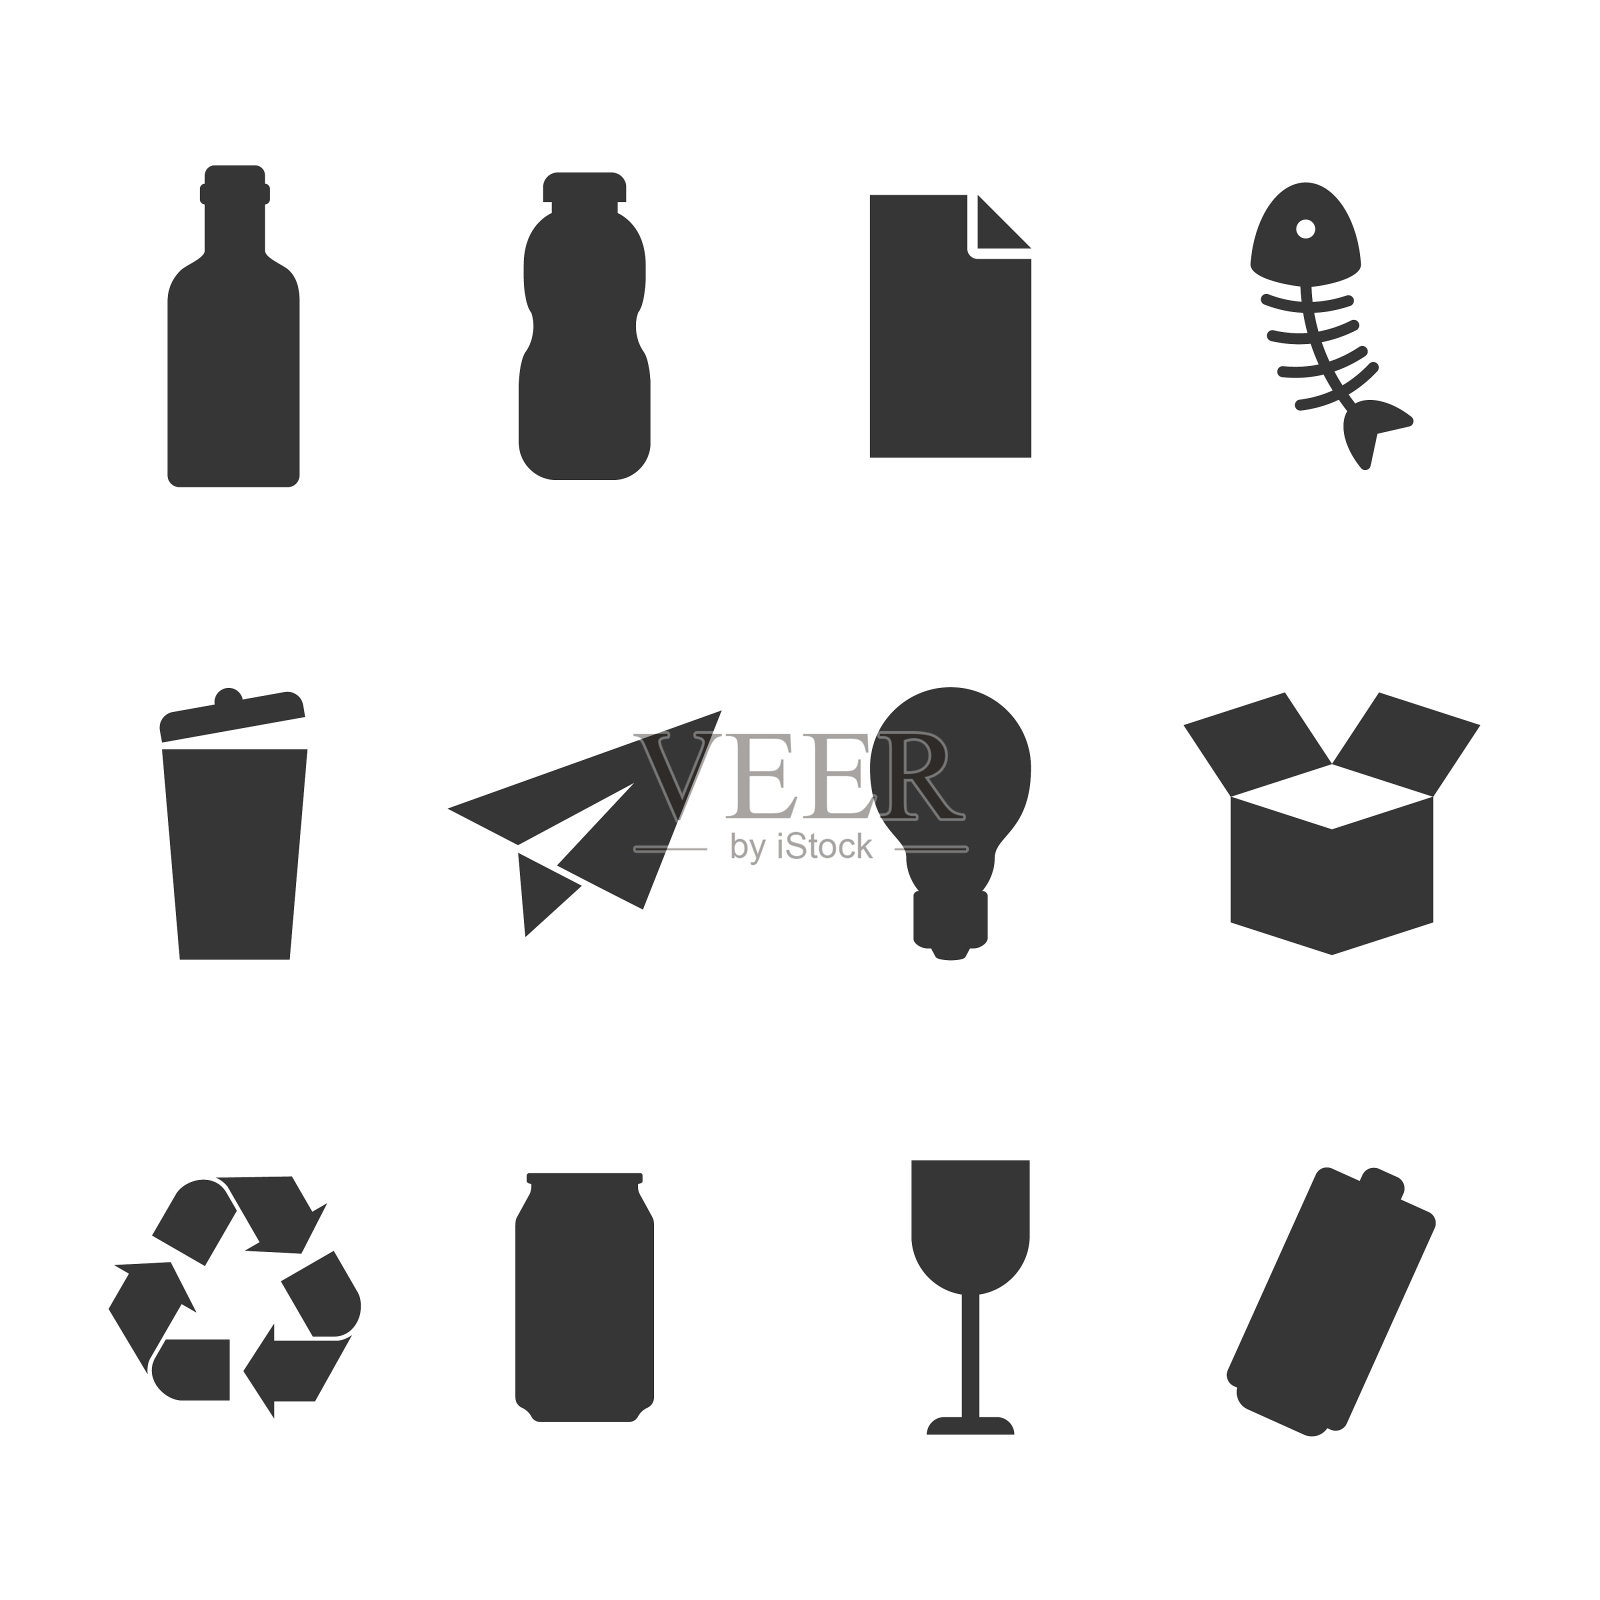 废物回收站用于某些类型的废物图标向量集图标素材